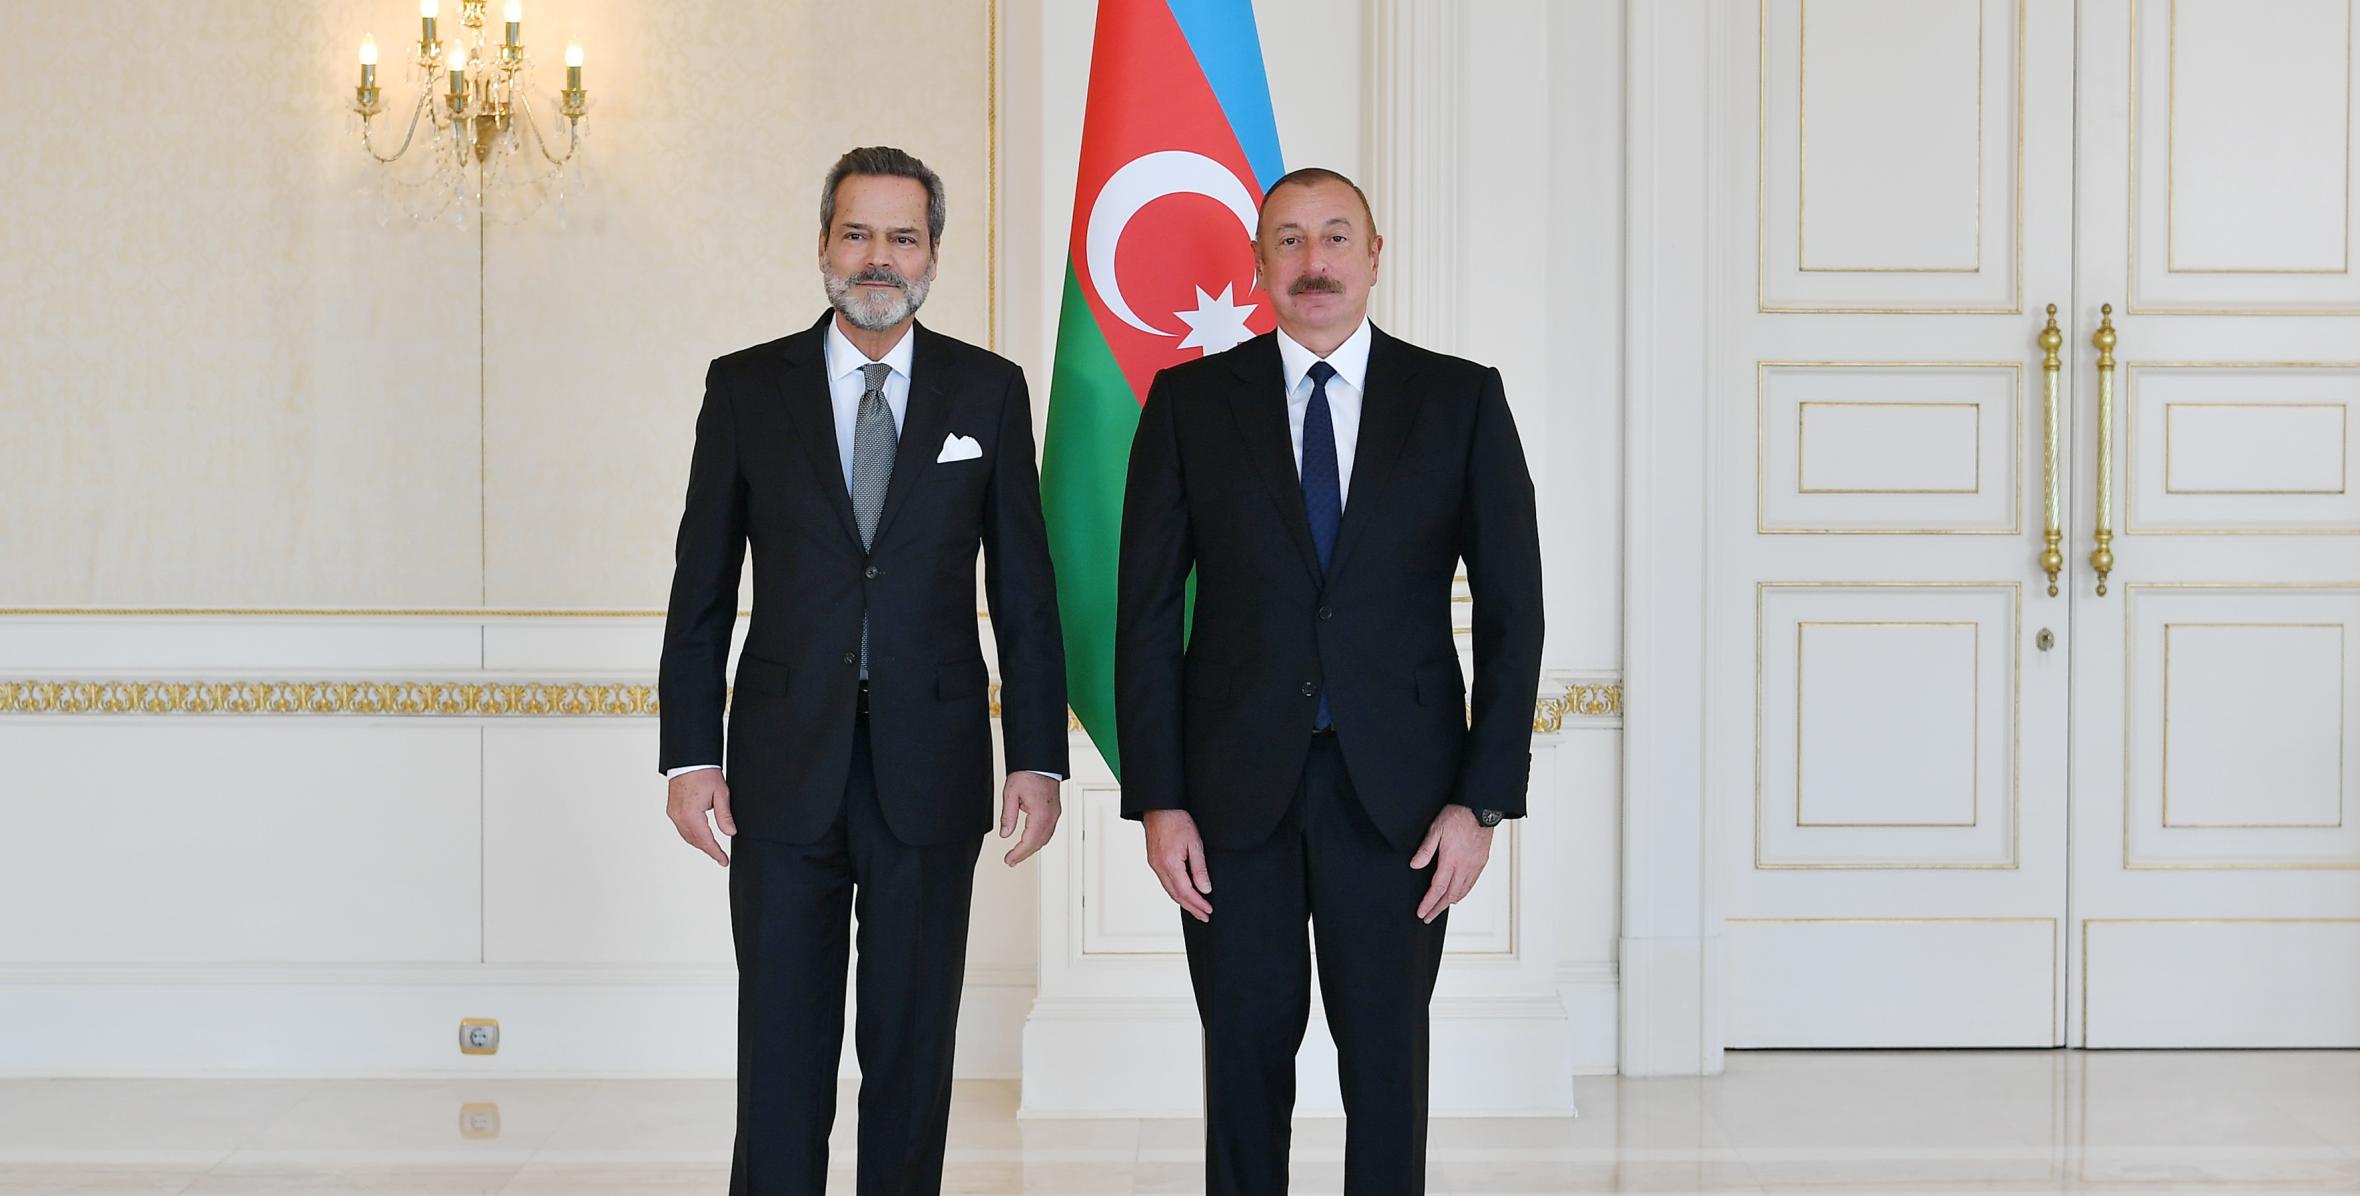 Ильхам Алиев принял верительные грамоты новоназначенного посла Португалии в нашей стране